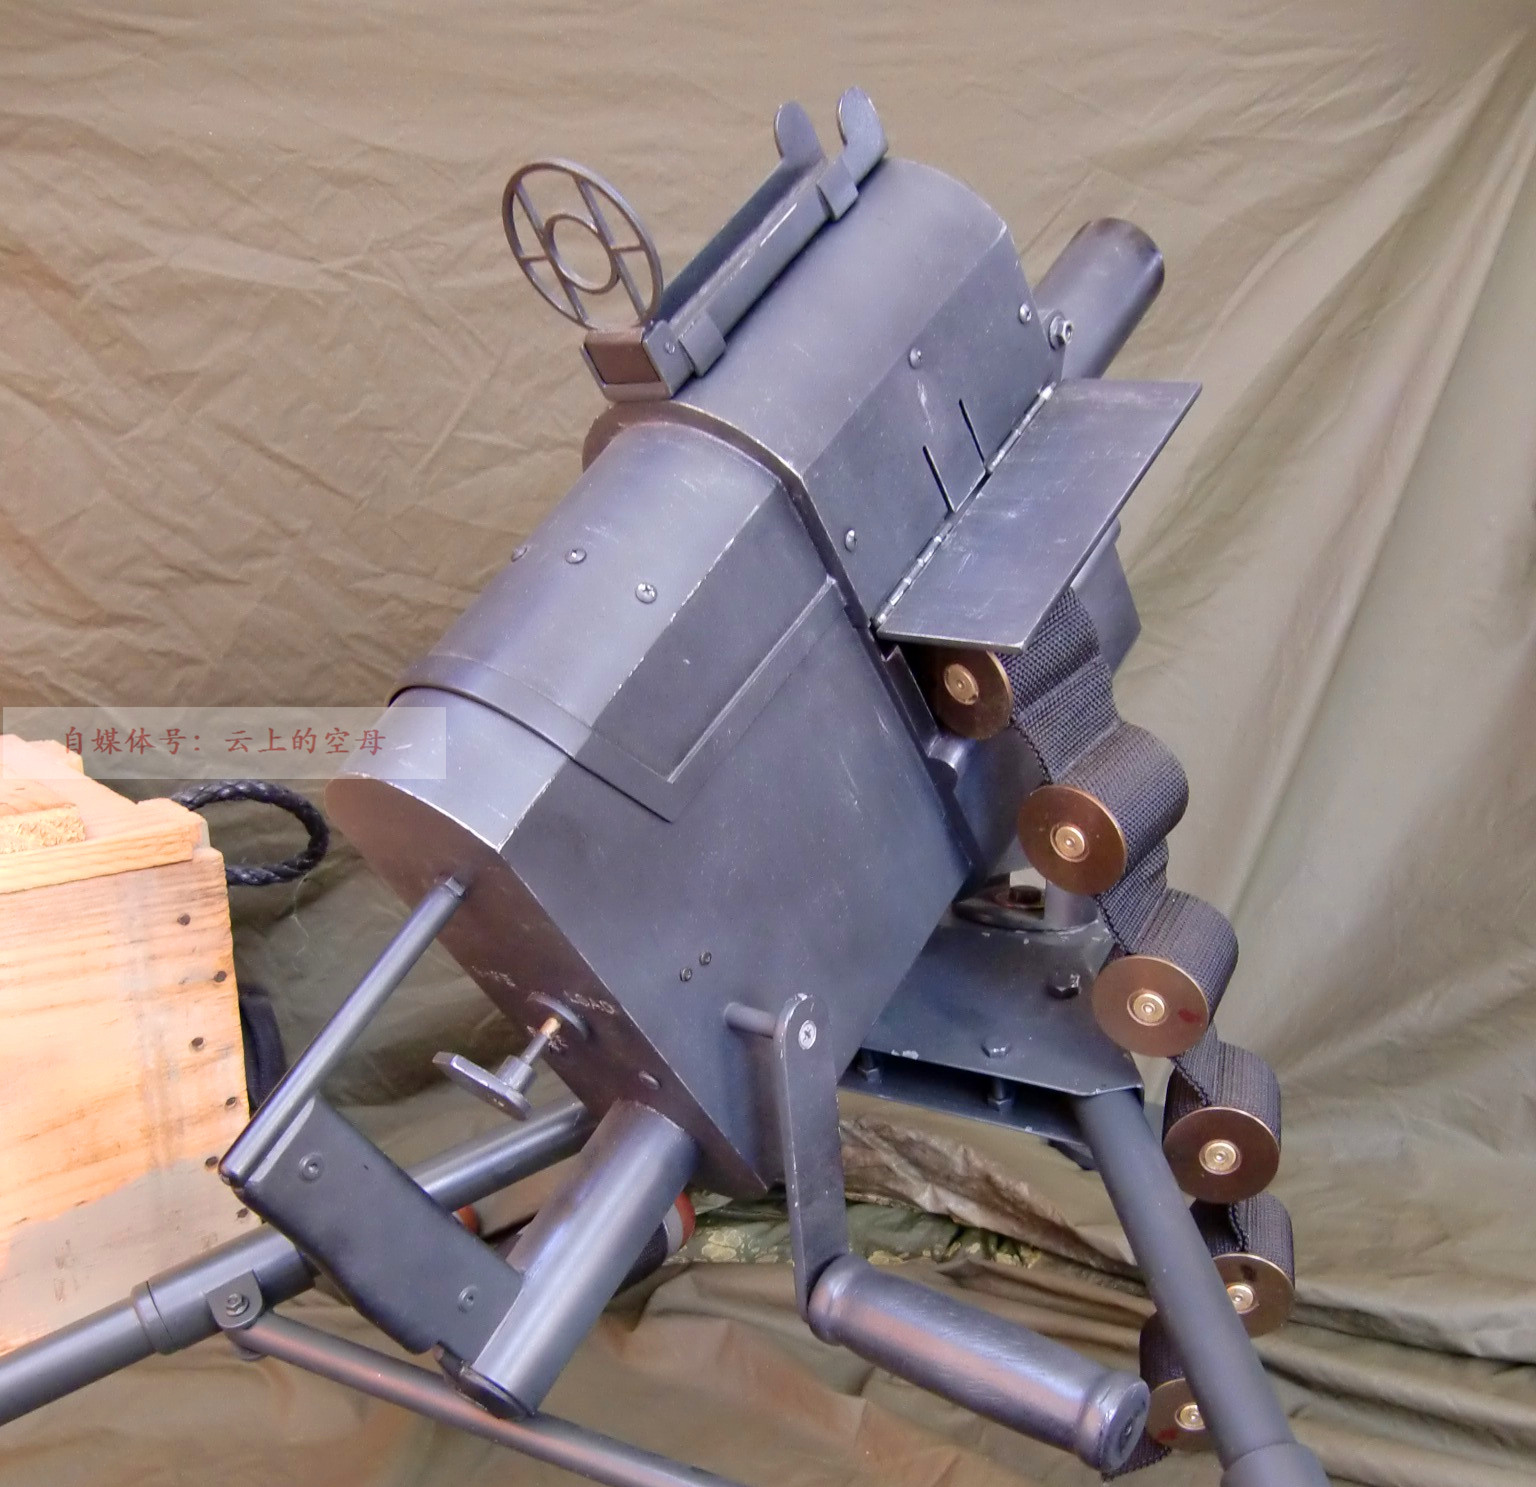 自动榴弹发射器中的废物,经常出故障且操作繁